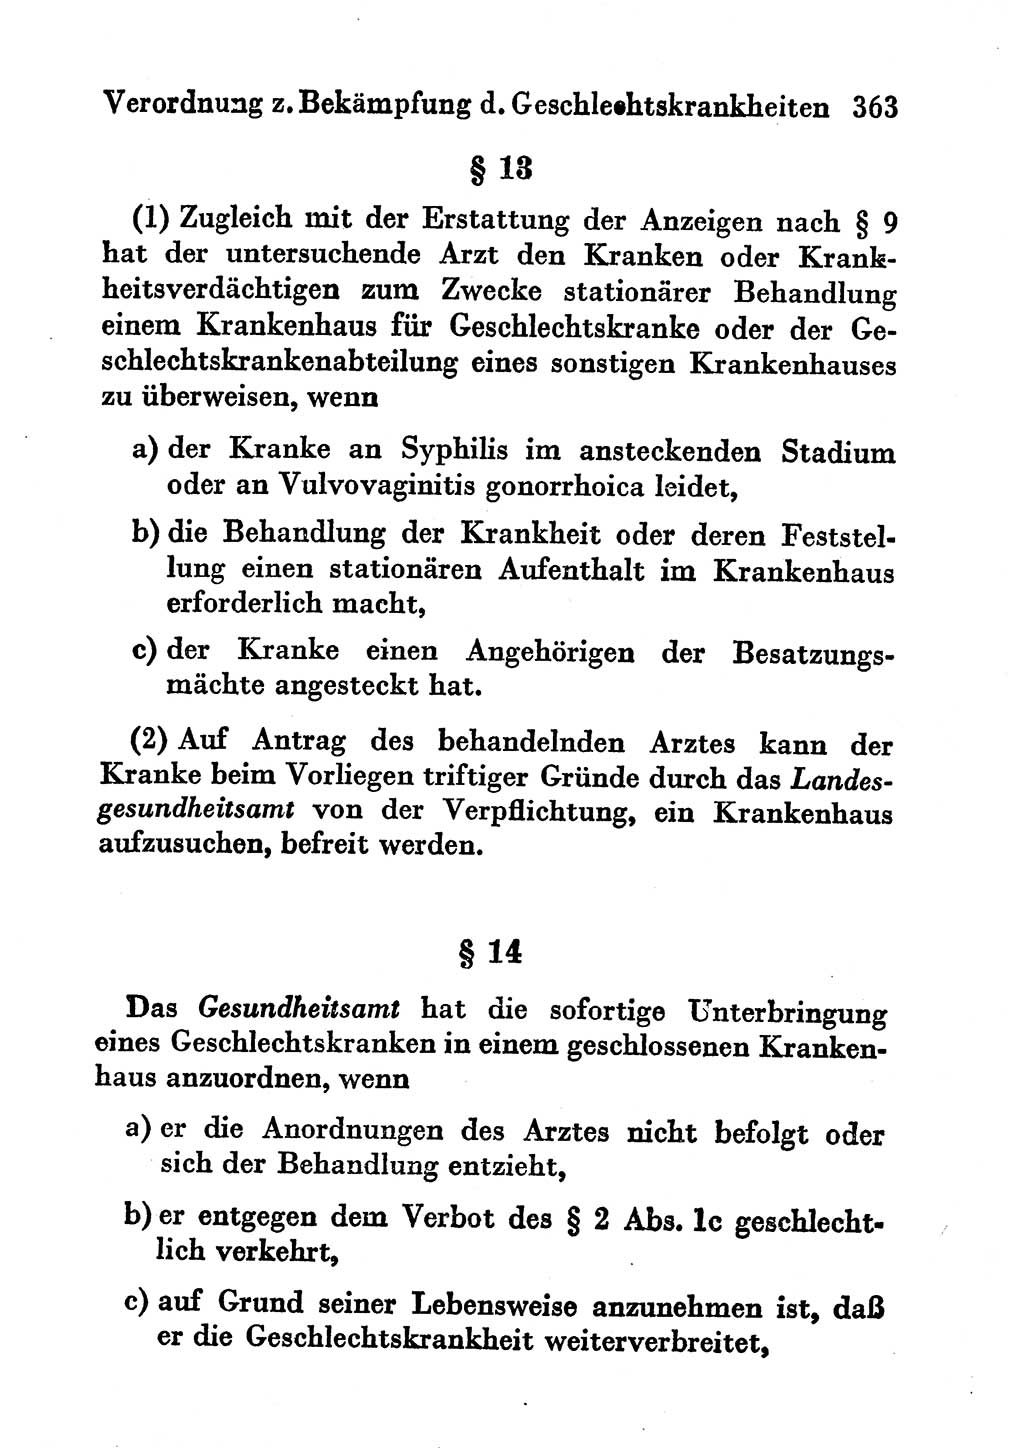 Strafgesetzbuch (StGB) und andere Strafgesetze [Deutsche Demokratische Republik (DDR)] 1956, Seite 363 (StGB Strafges. DDR 1956, S. 363)